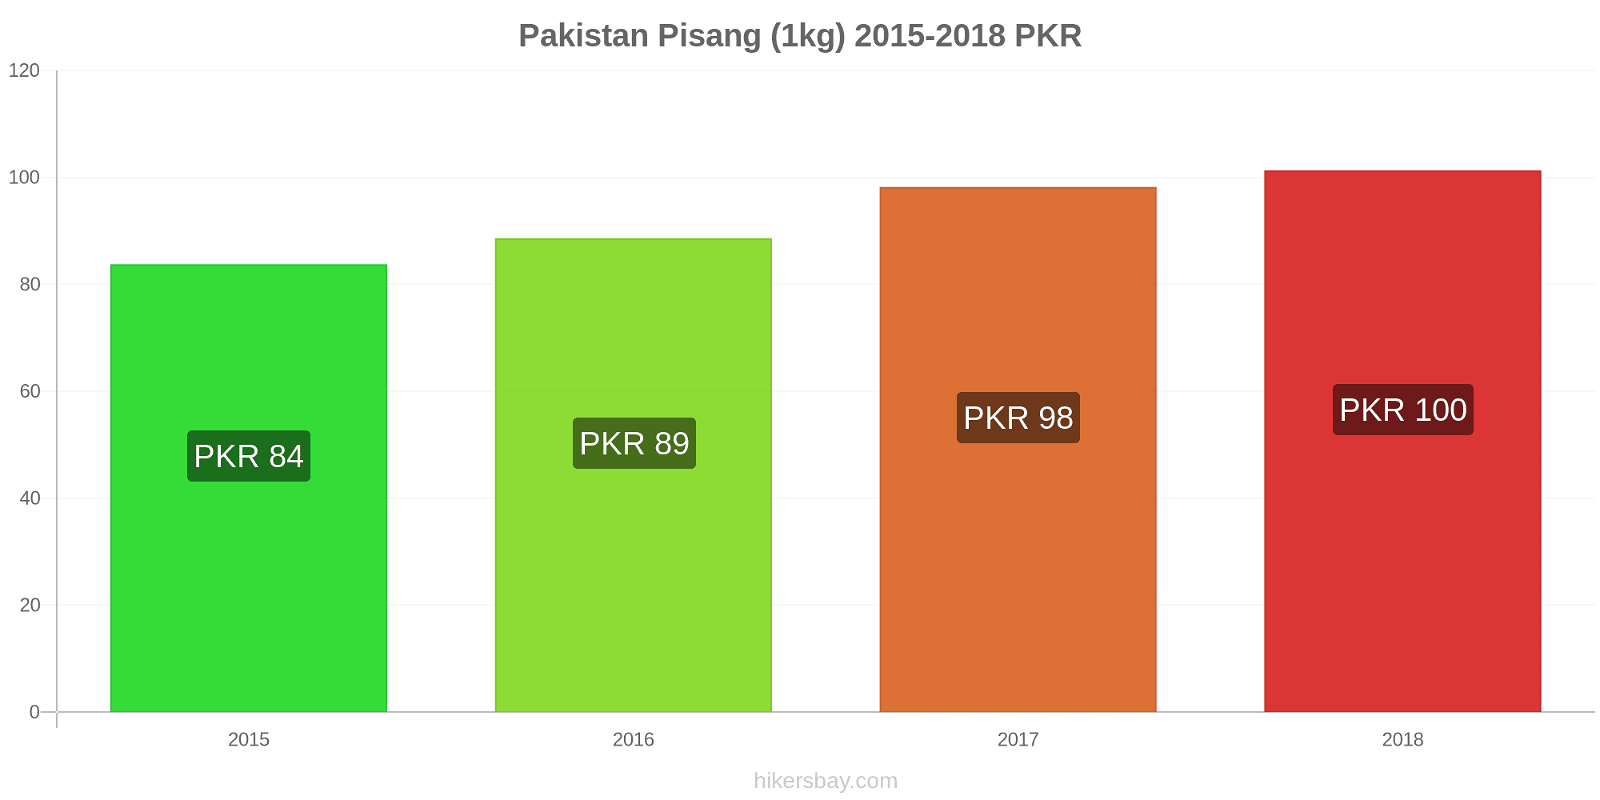 Pakistan perubahan harga Pisang (1kg) hikersbay.com